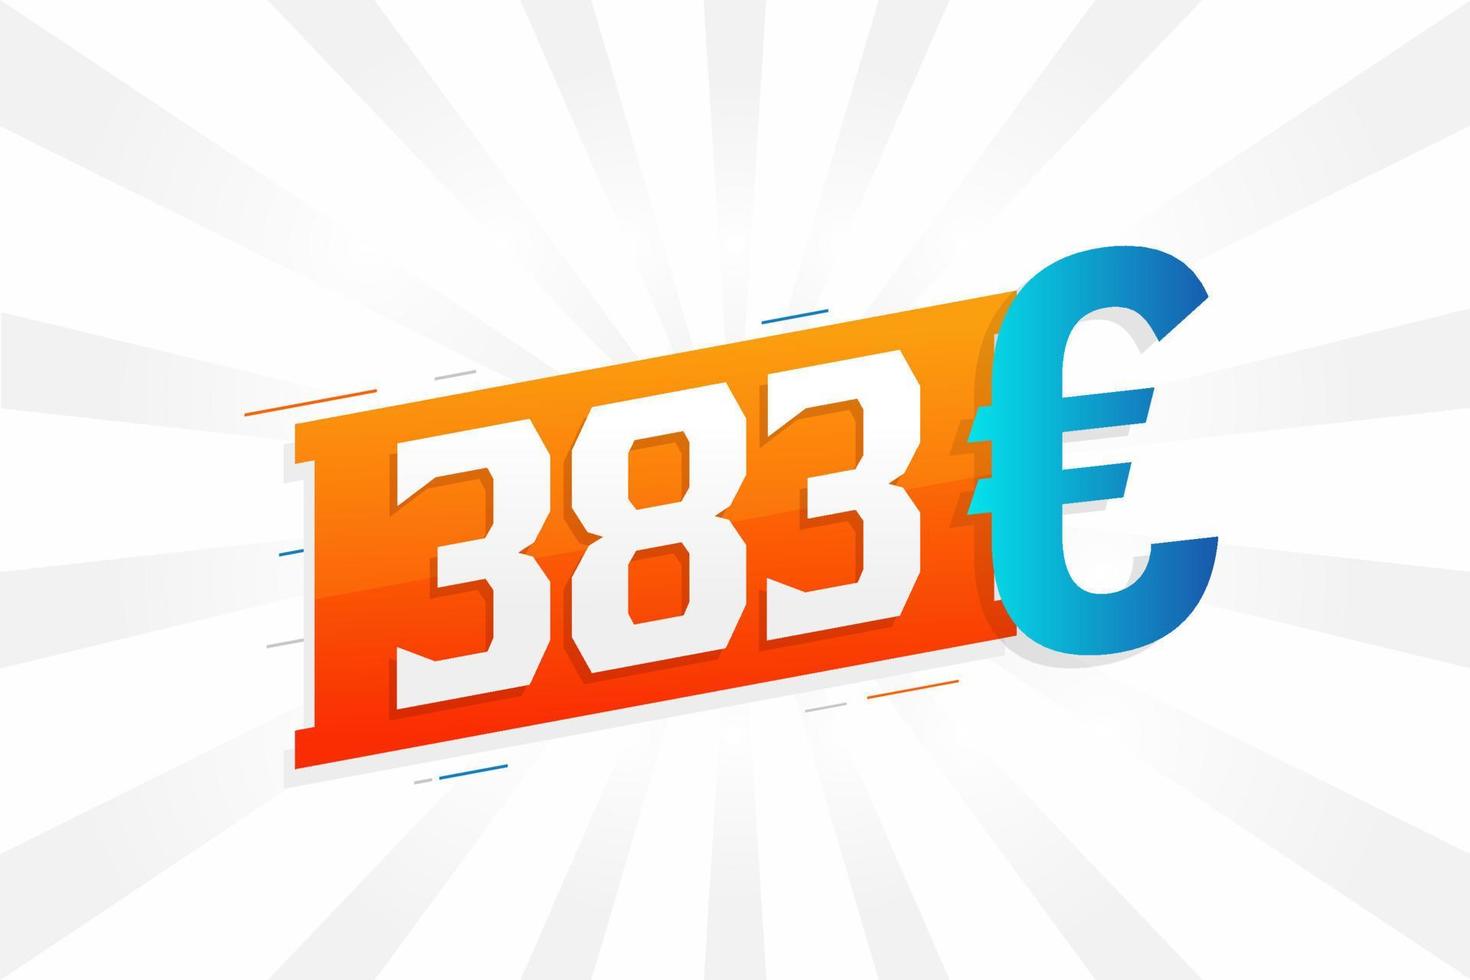 383 Euro Currency vector text symbol. 383 Euro European Union Money stock vector